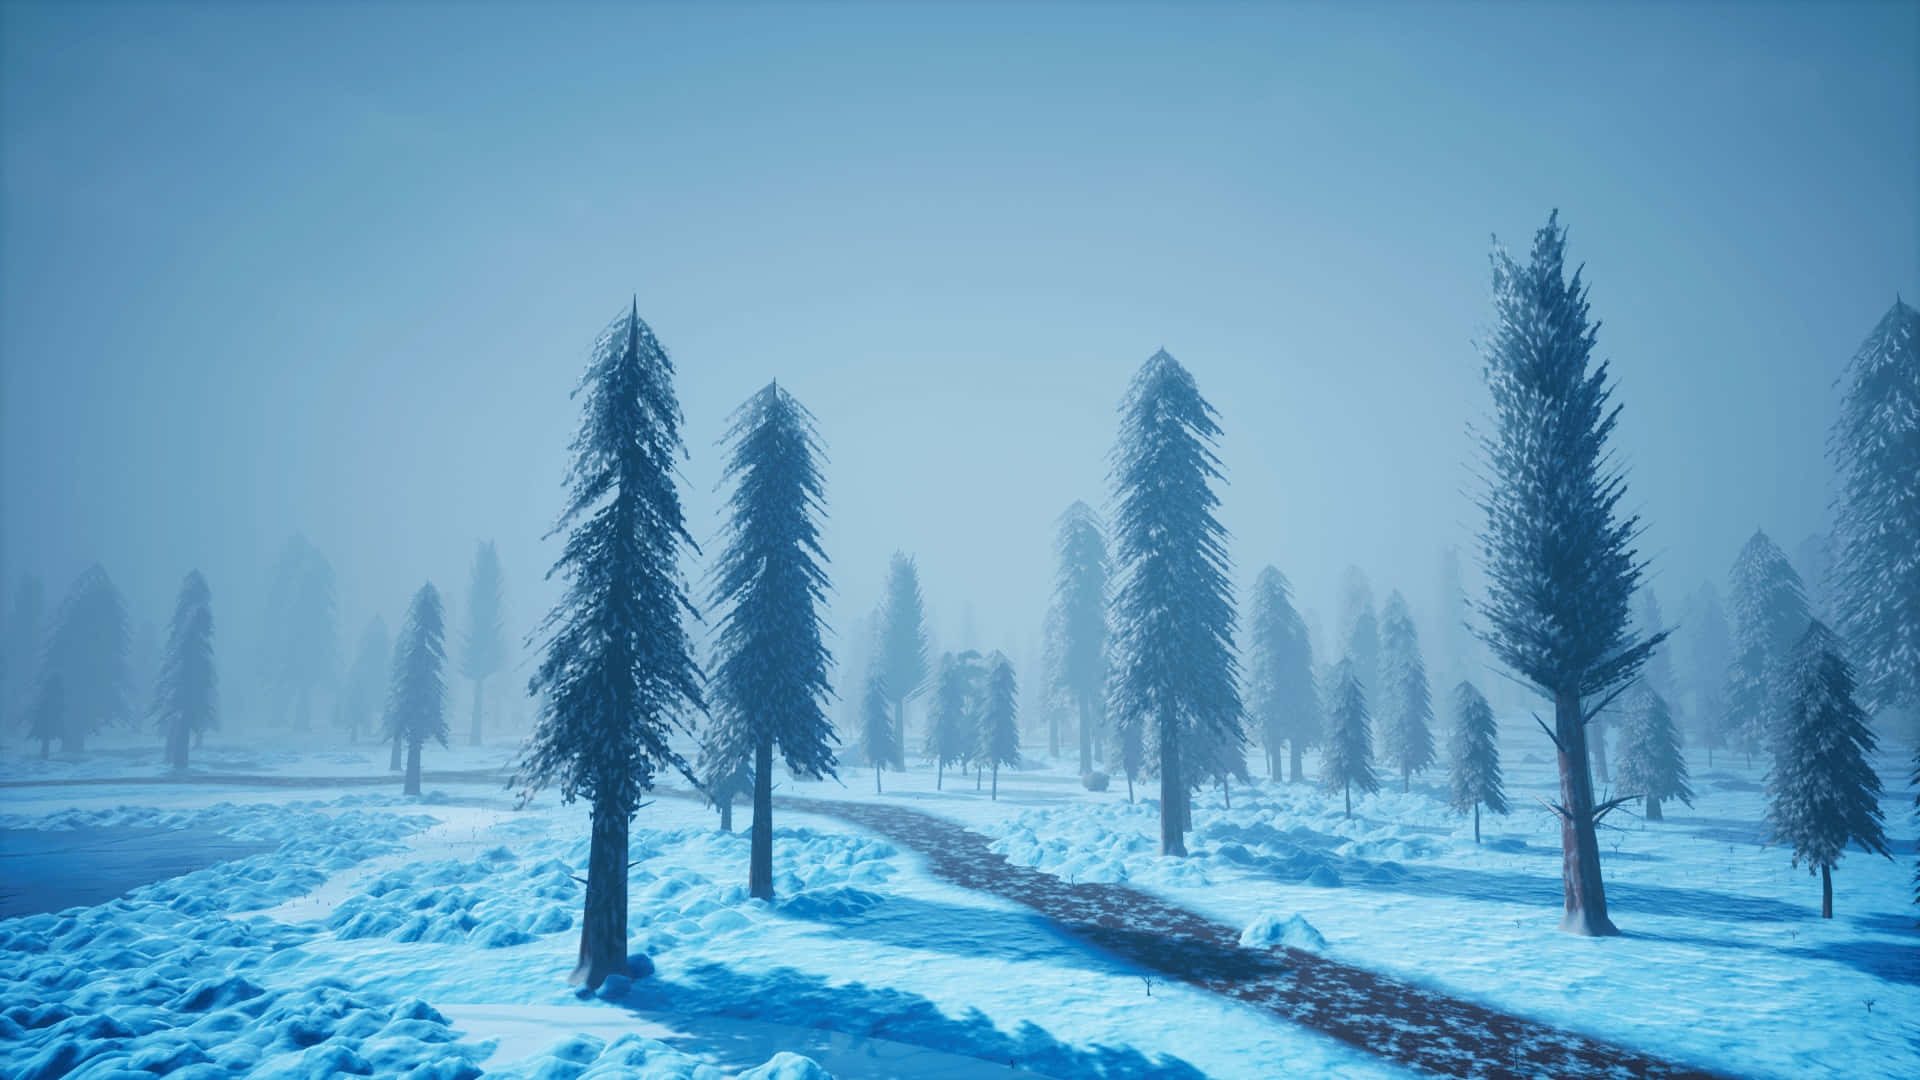 Snow-Filled Winter Wonderland